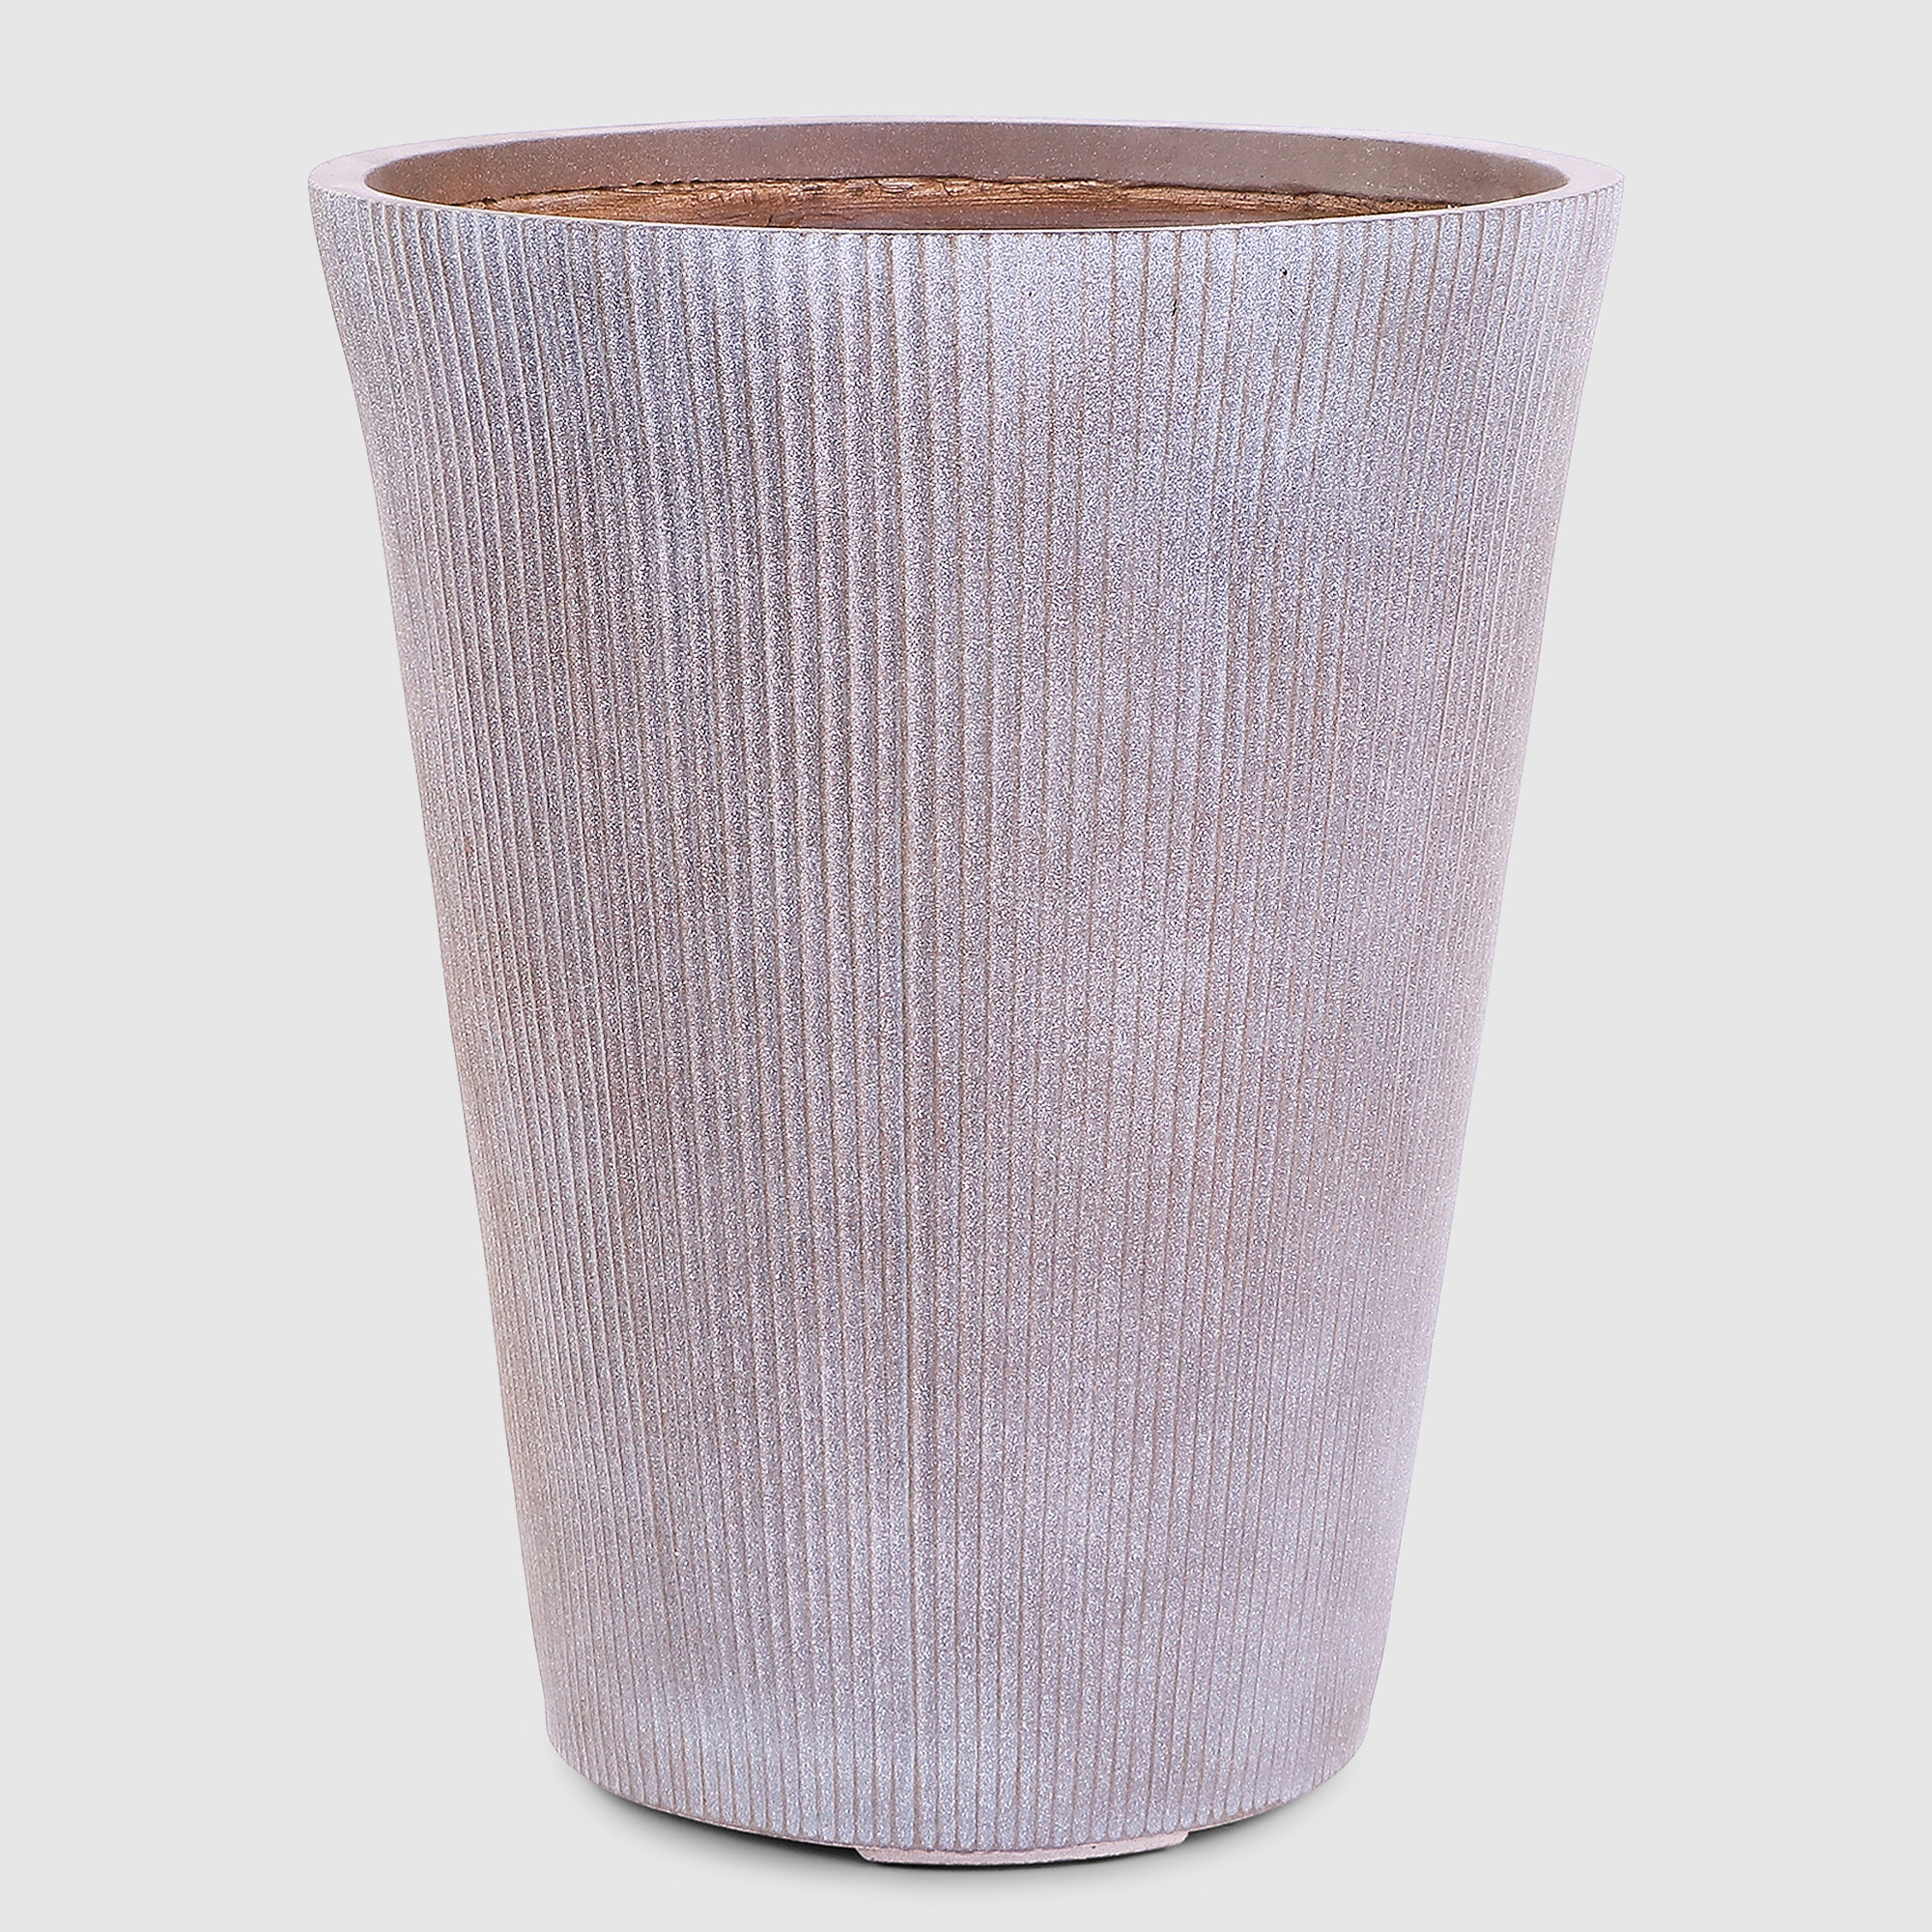 Горшок для цветов L&t pottery высокий серо-коричневый 44х44х55 см горшок с поддоном гончар паутинка 1 d31 v12л коричневый